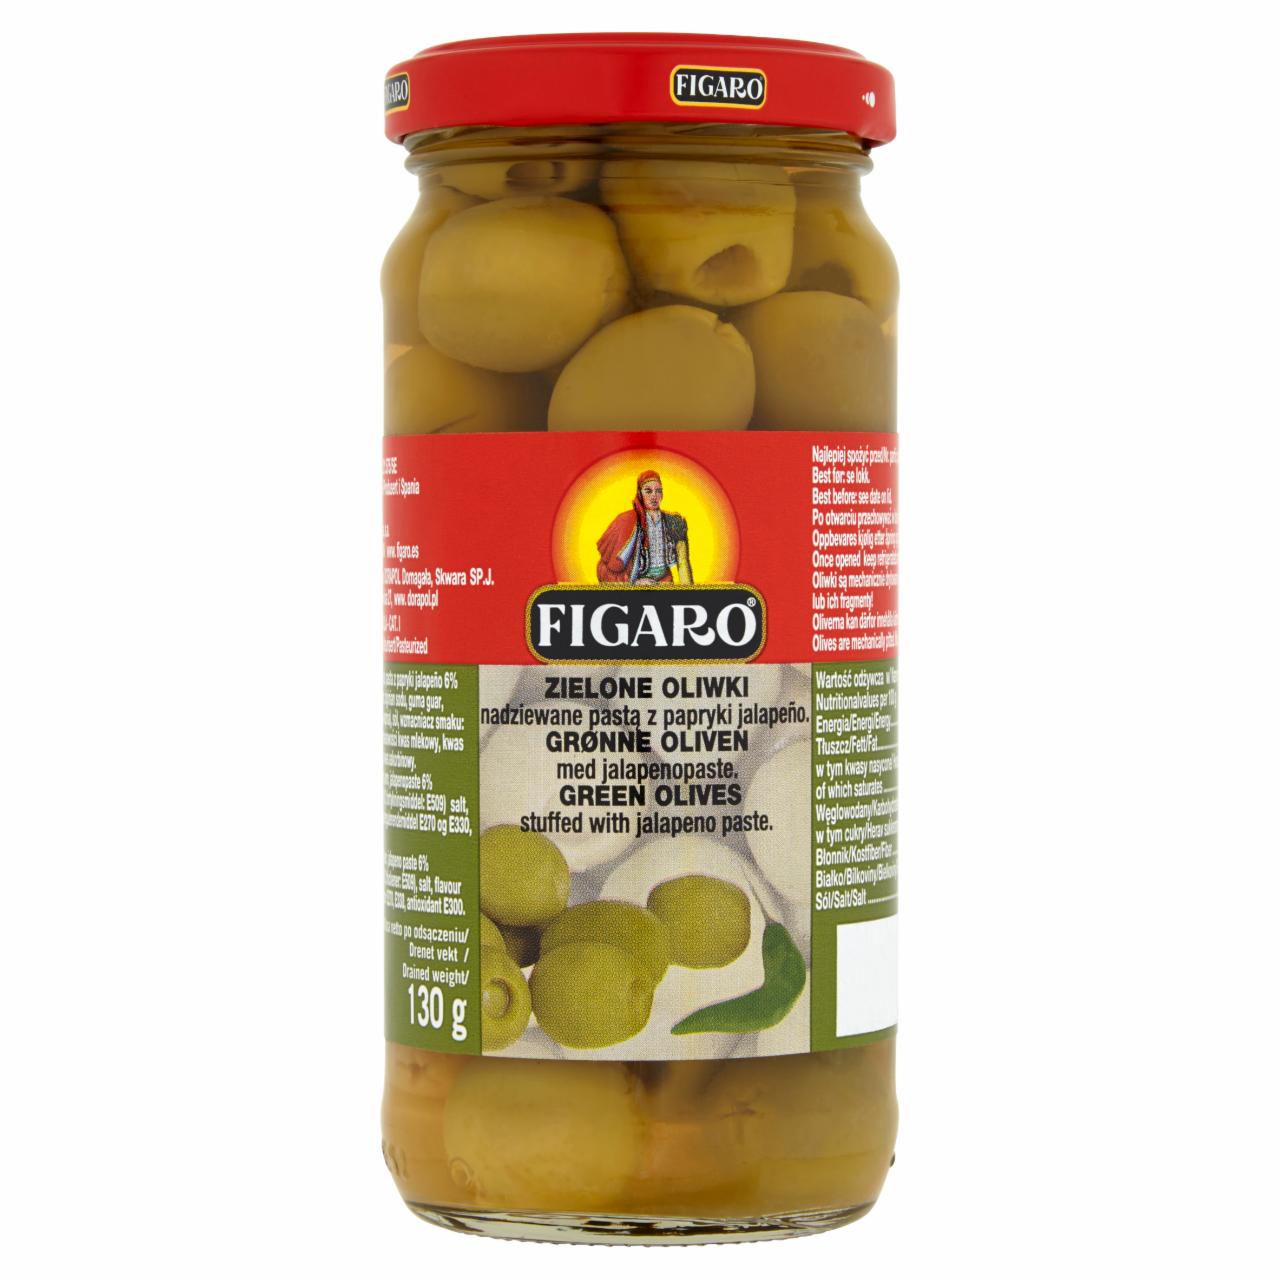 Zdjęcia - Figaro Zielone oliwki nadziewane pastą z papryki jalapeño